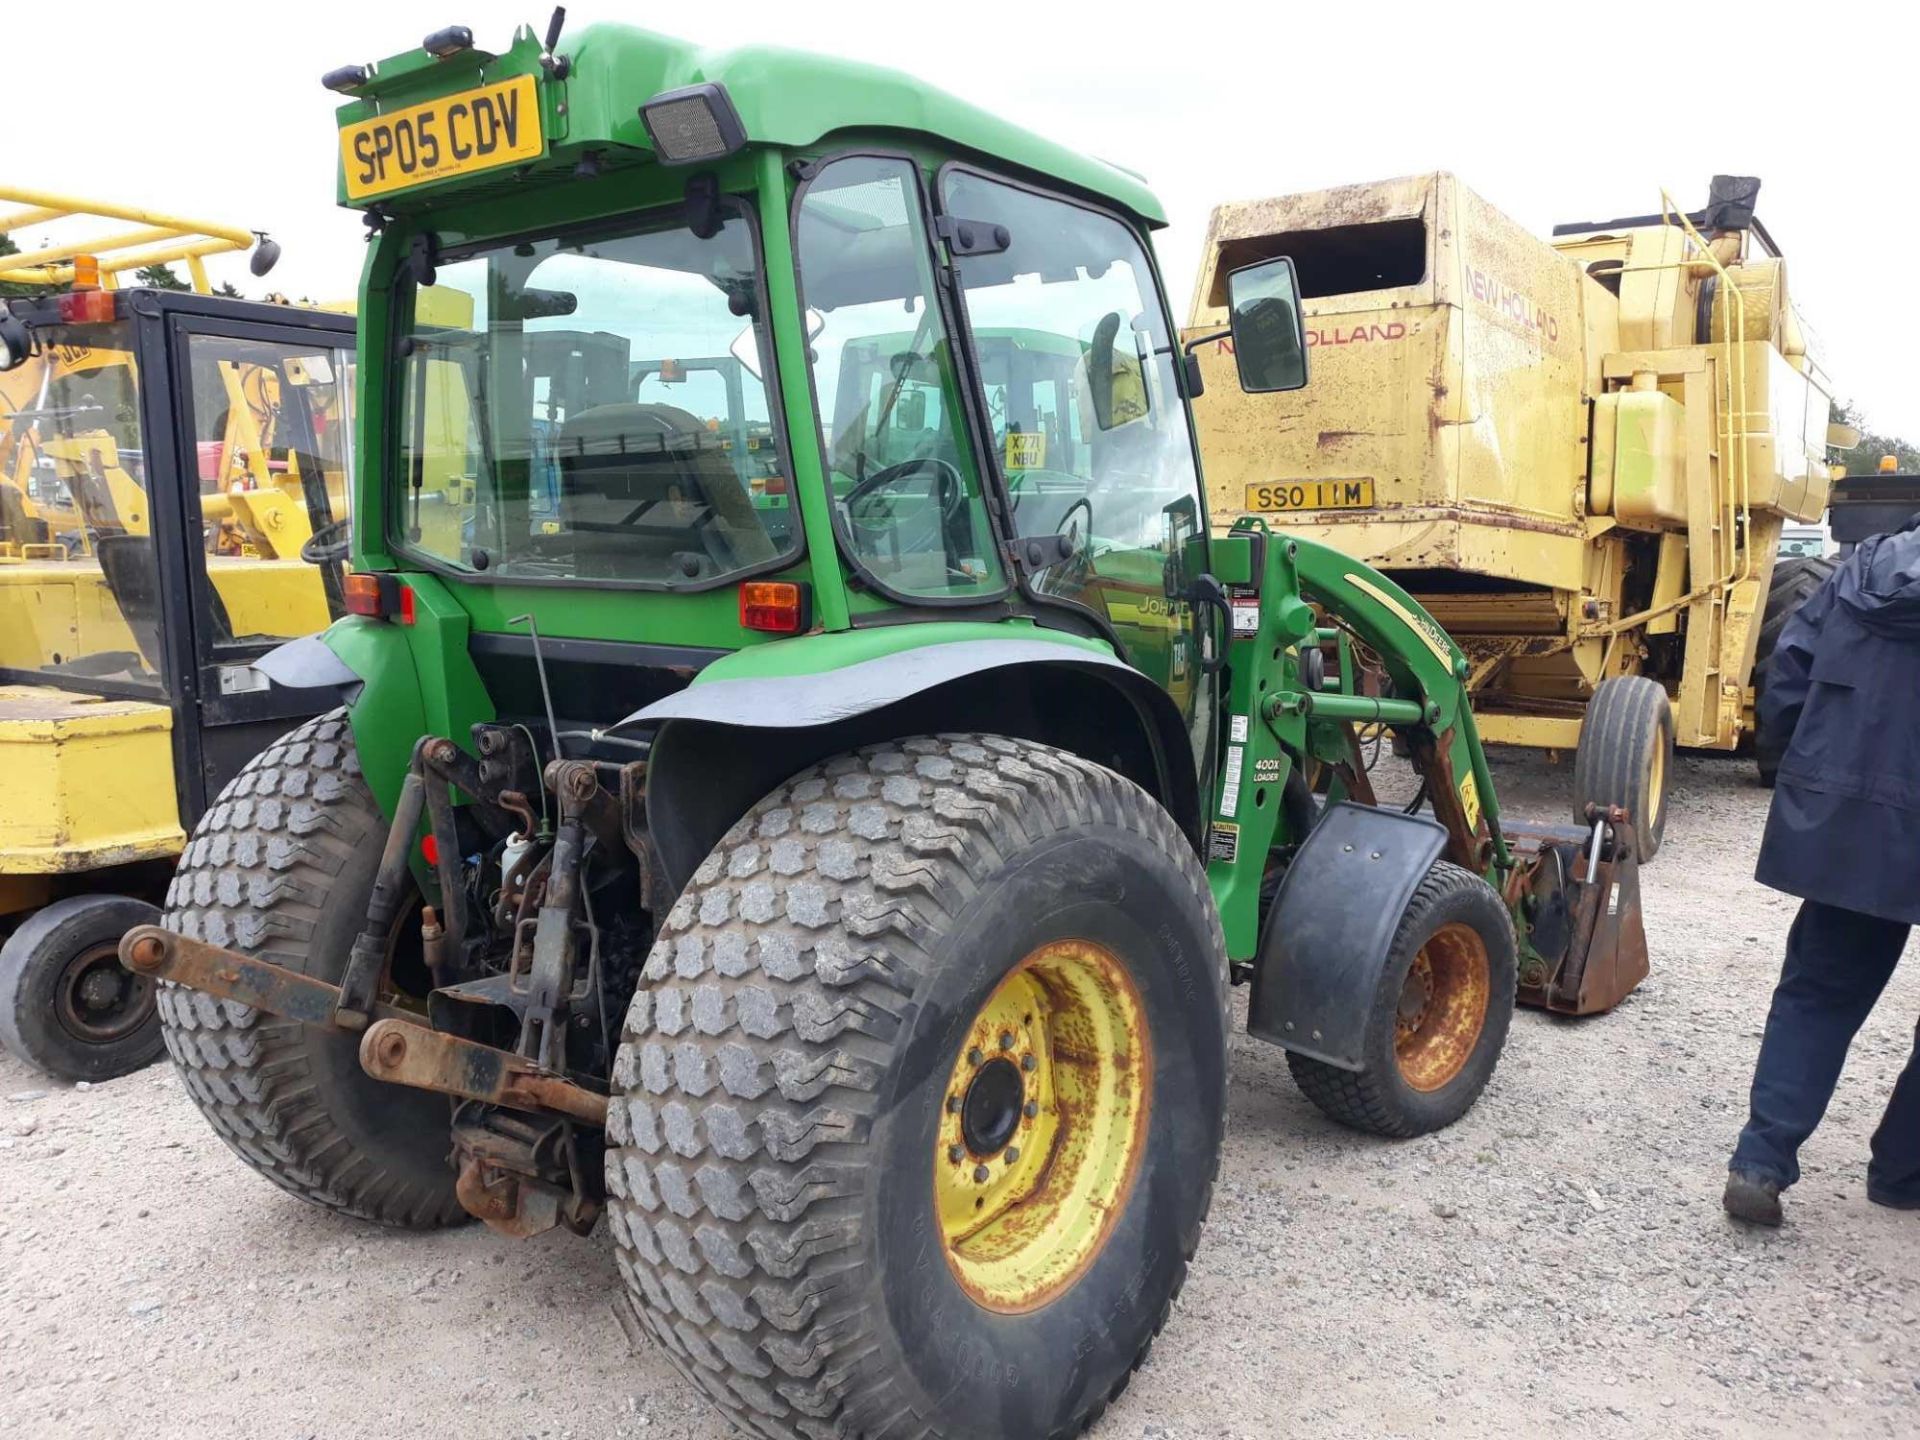 John Deere 4520 - 0cc Tractor - Bild 2 aus 2